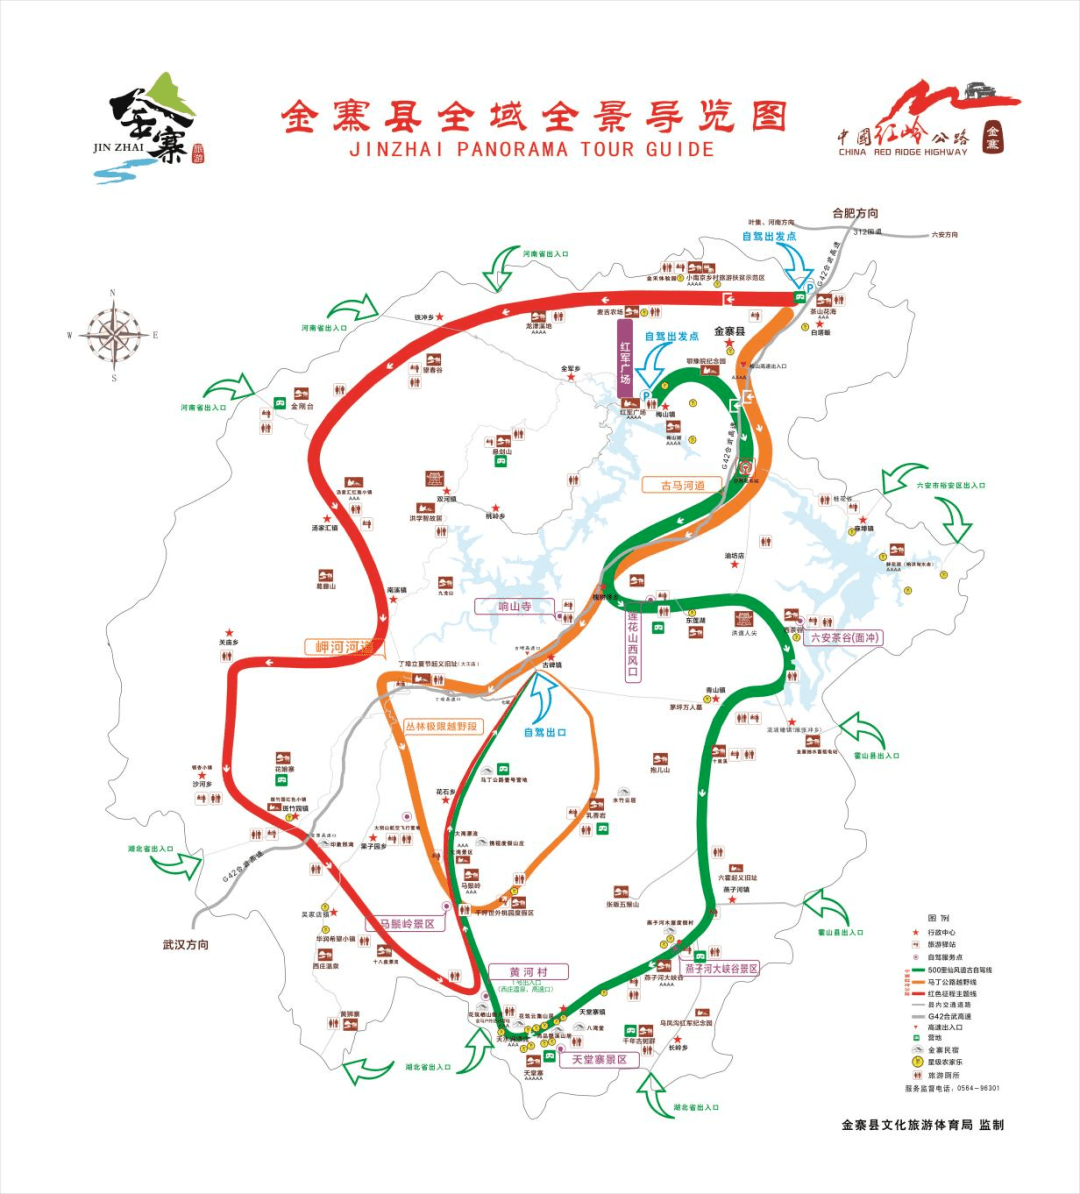 荆州公路自驾线路图图片